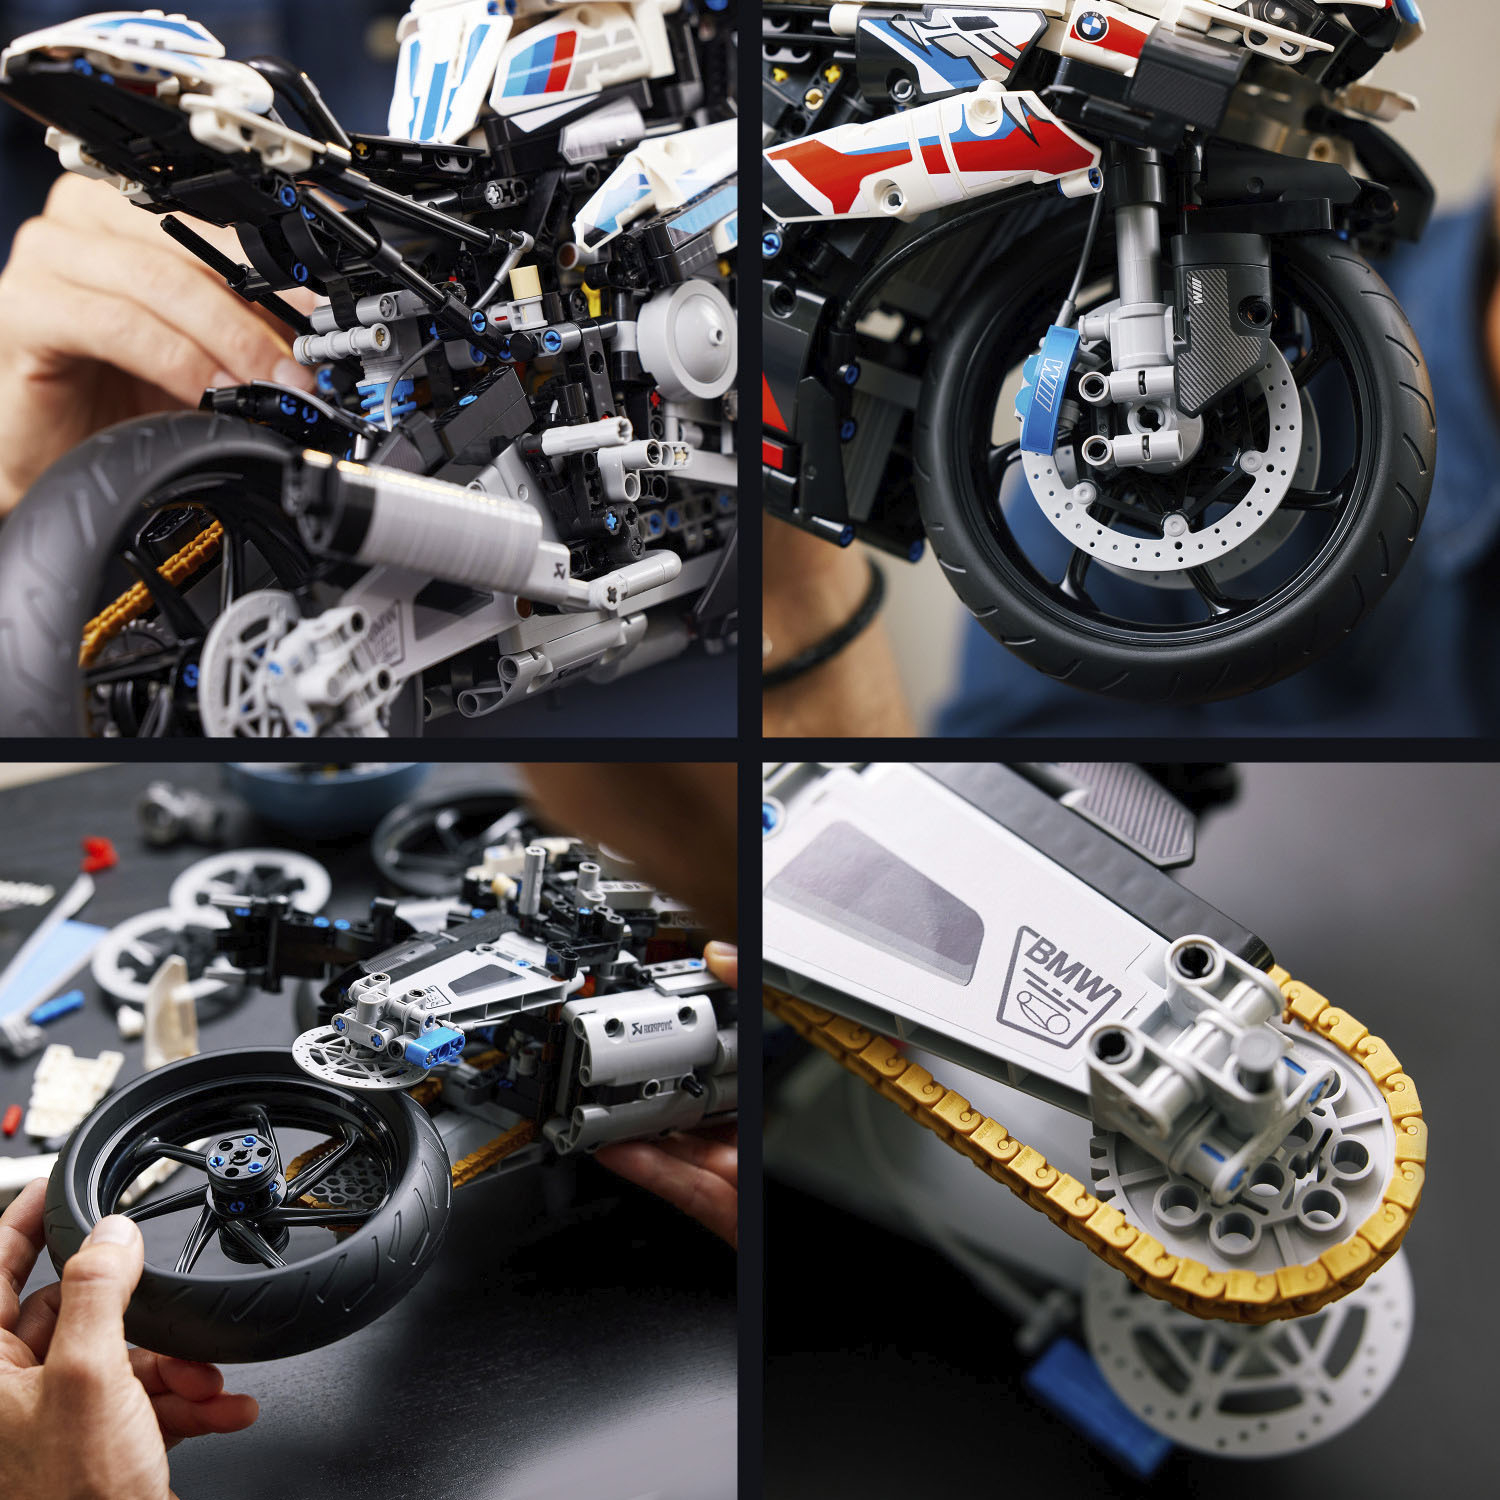 Lego Technic BMW M1000RR